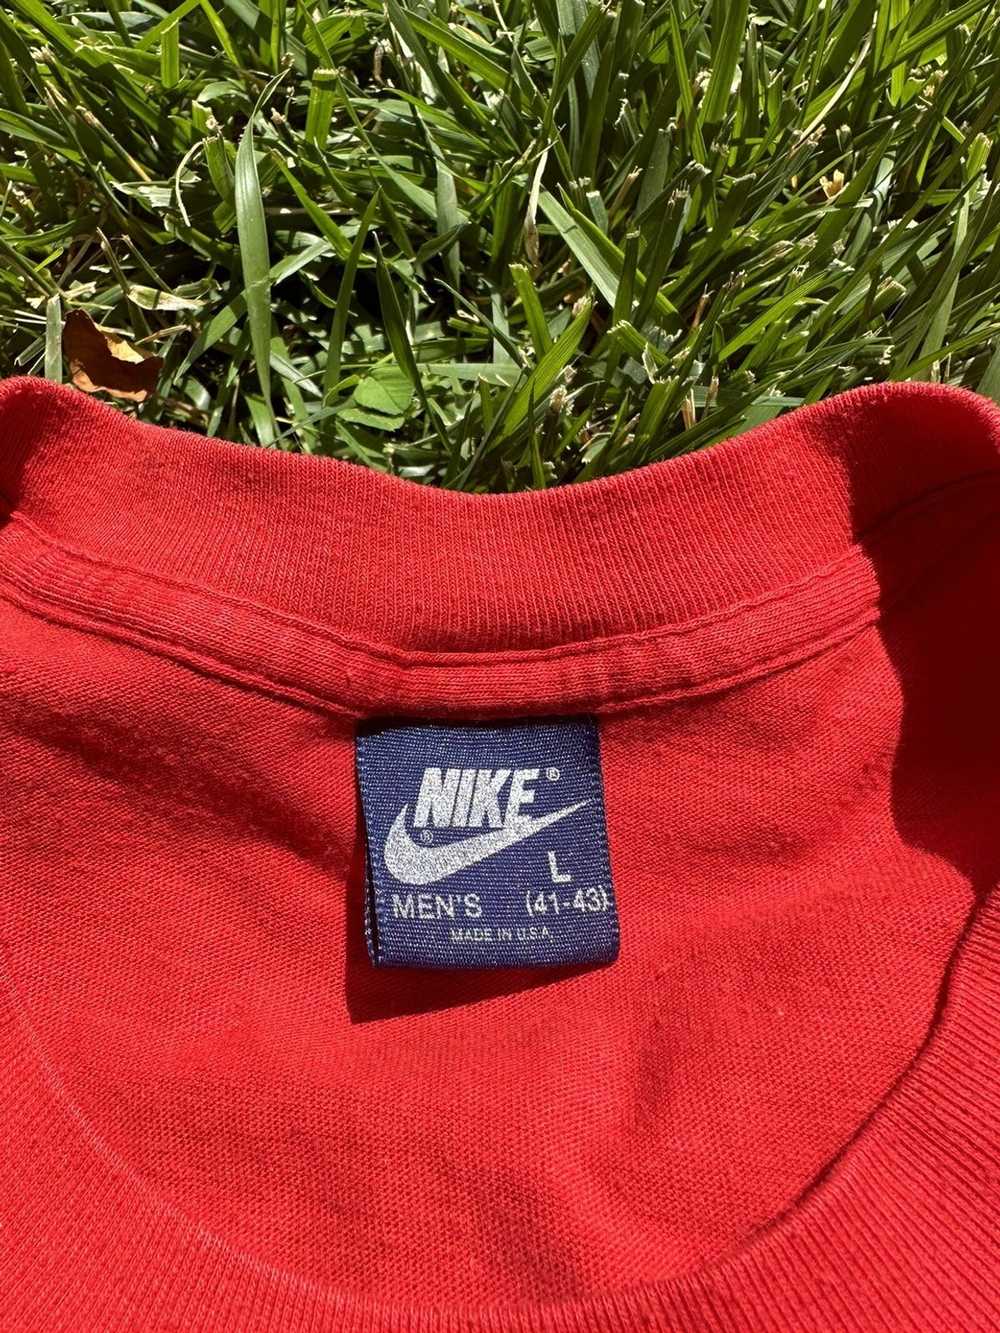 Jordan Brand × Nike 1985 Air Jordan “Over the Sho… - image 2